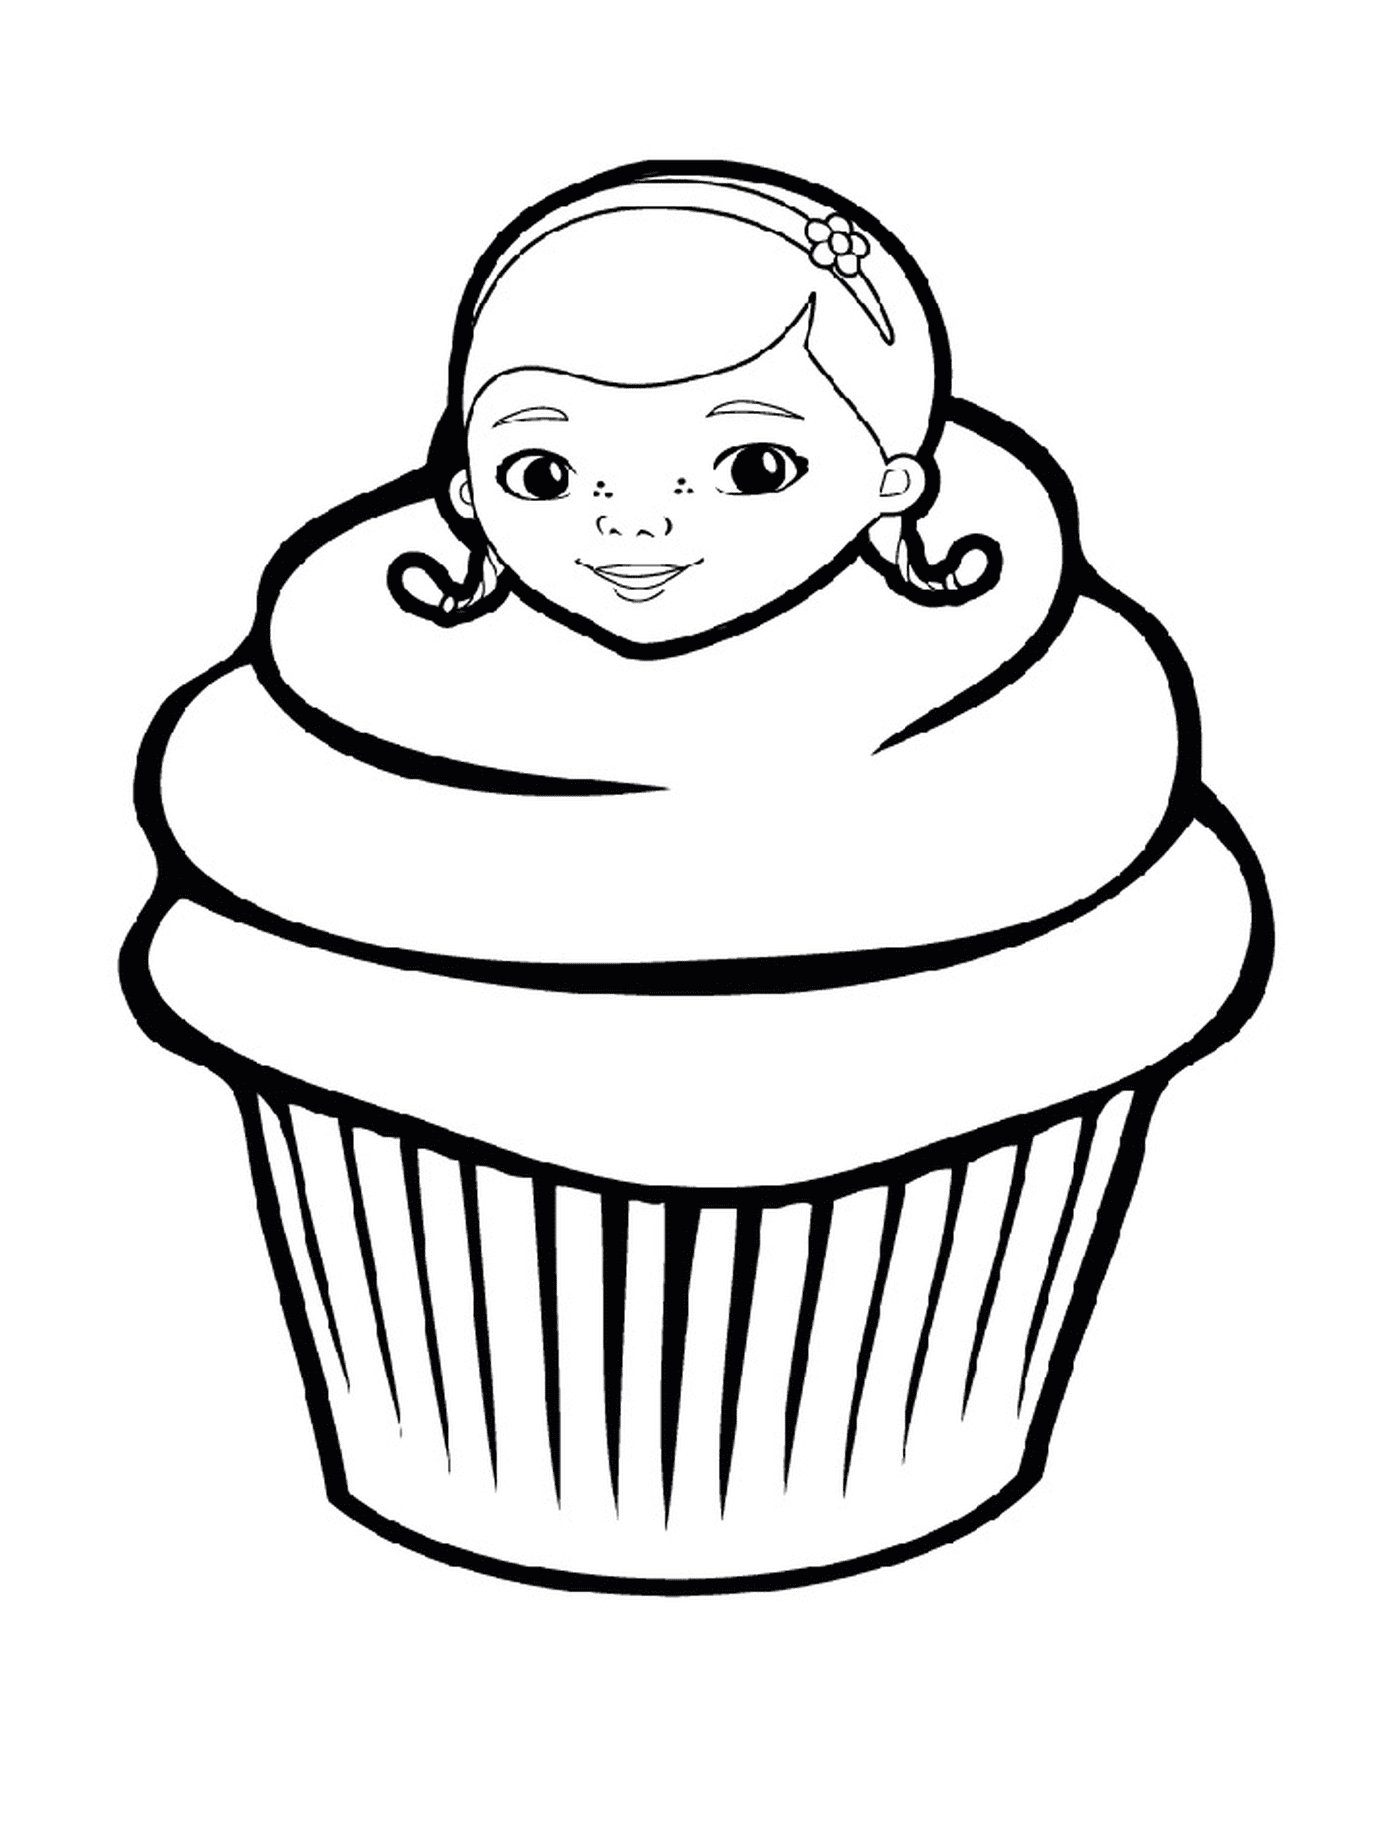  Um cupcake de Doc McStuffins, com o rosto de uma mulher 